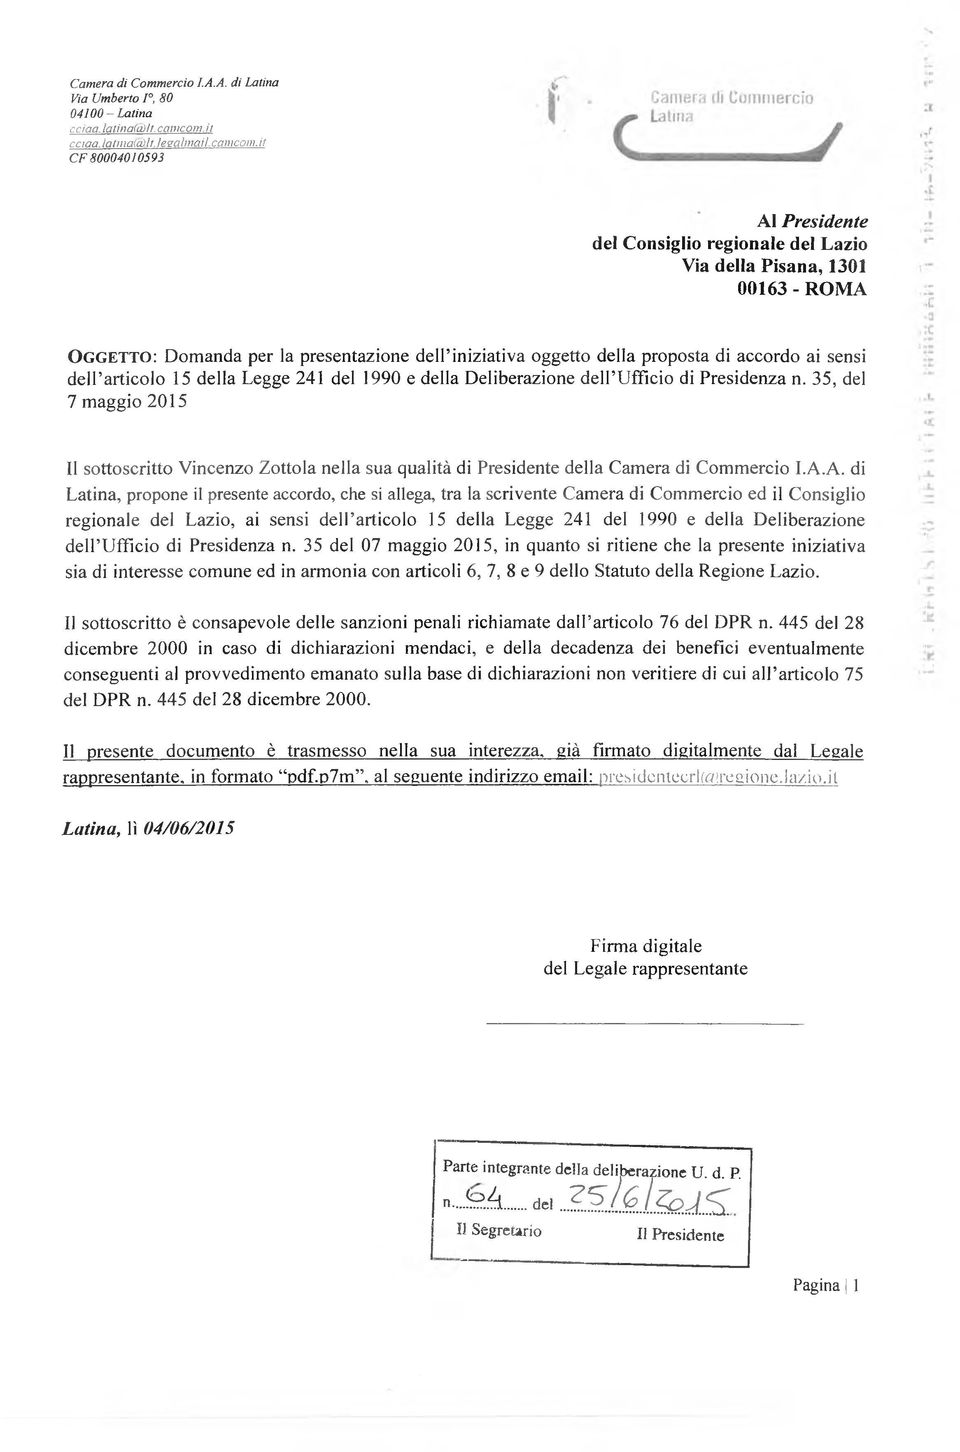 15 della Legge 241 del 1990 e della Deliberazione dell Ufficio di Presidenza n. 35, del 7 maggio 2015 Il sottoscritto Vincenzo Zottola nella sua qualità di Presidente della Camera di Commercio I.A.